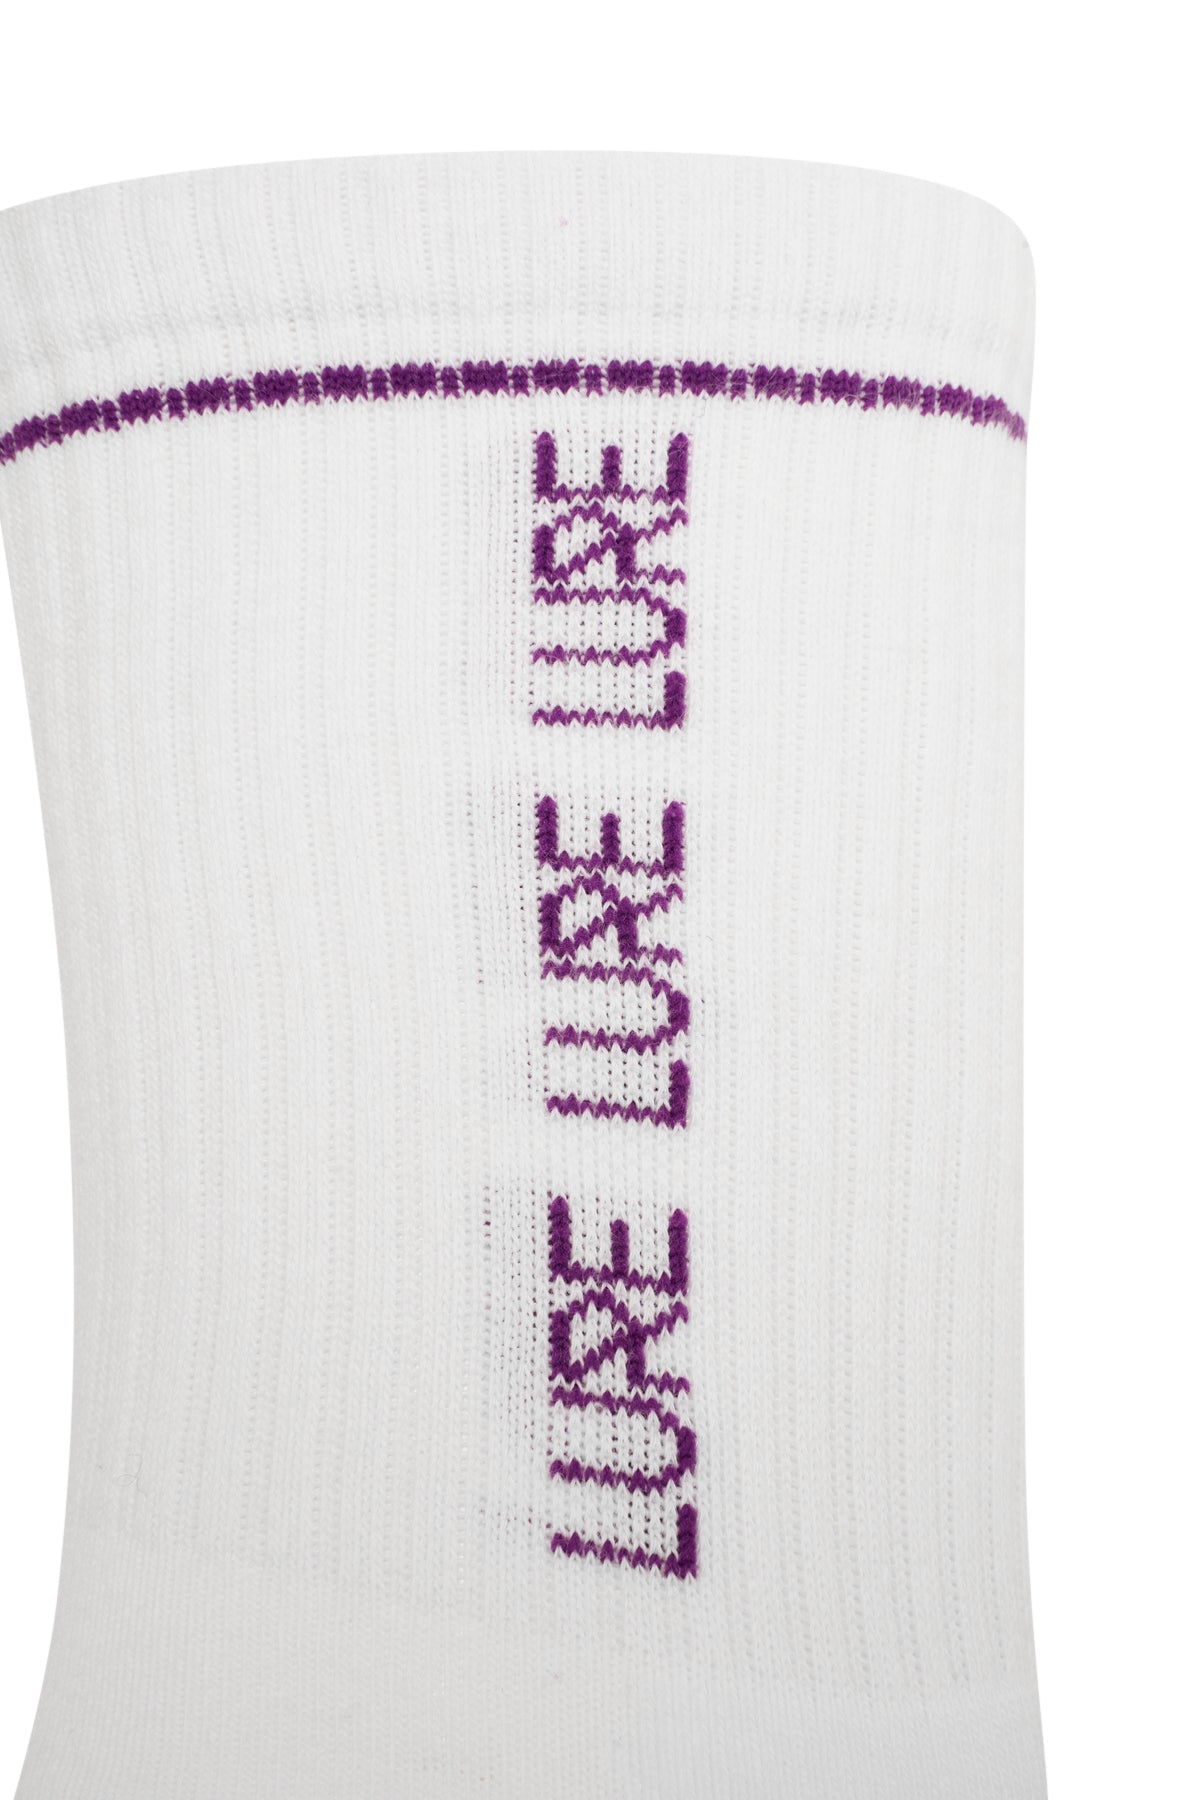 Lure Lineup Socks - Purple